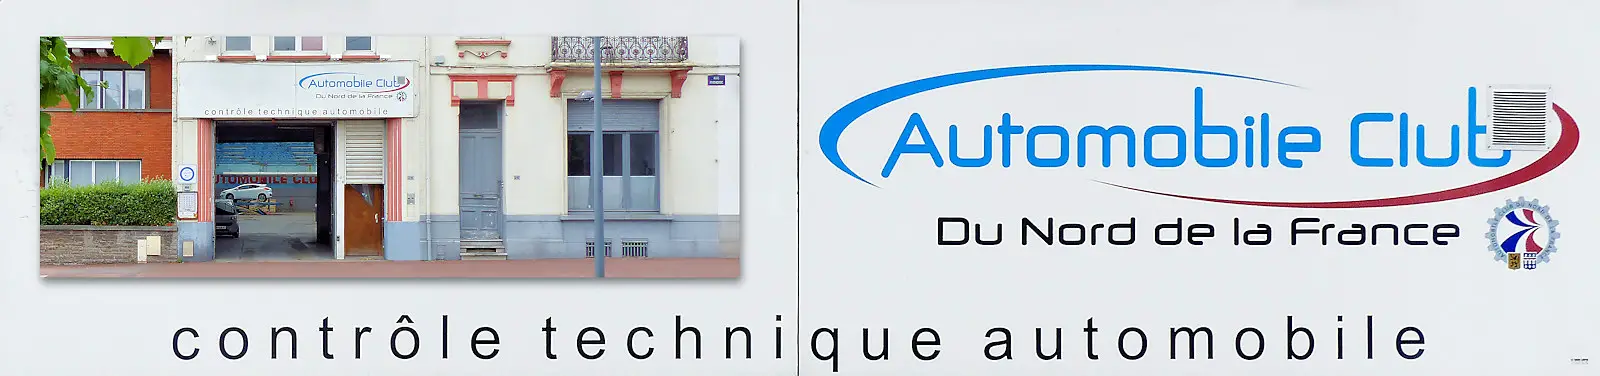 AUTOMOBILE CLUB DU NORD FRANCE